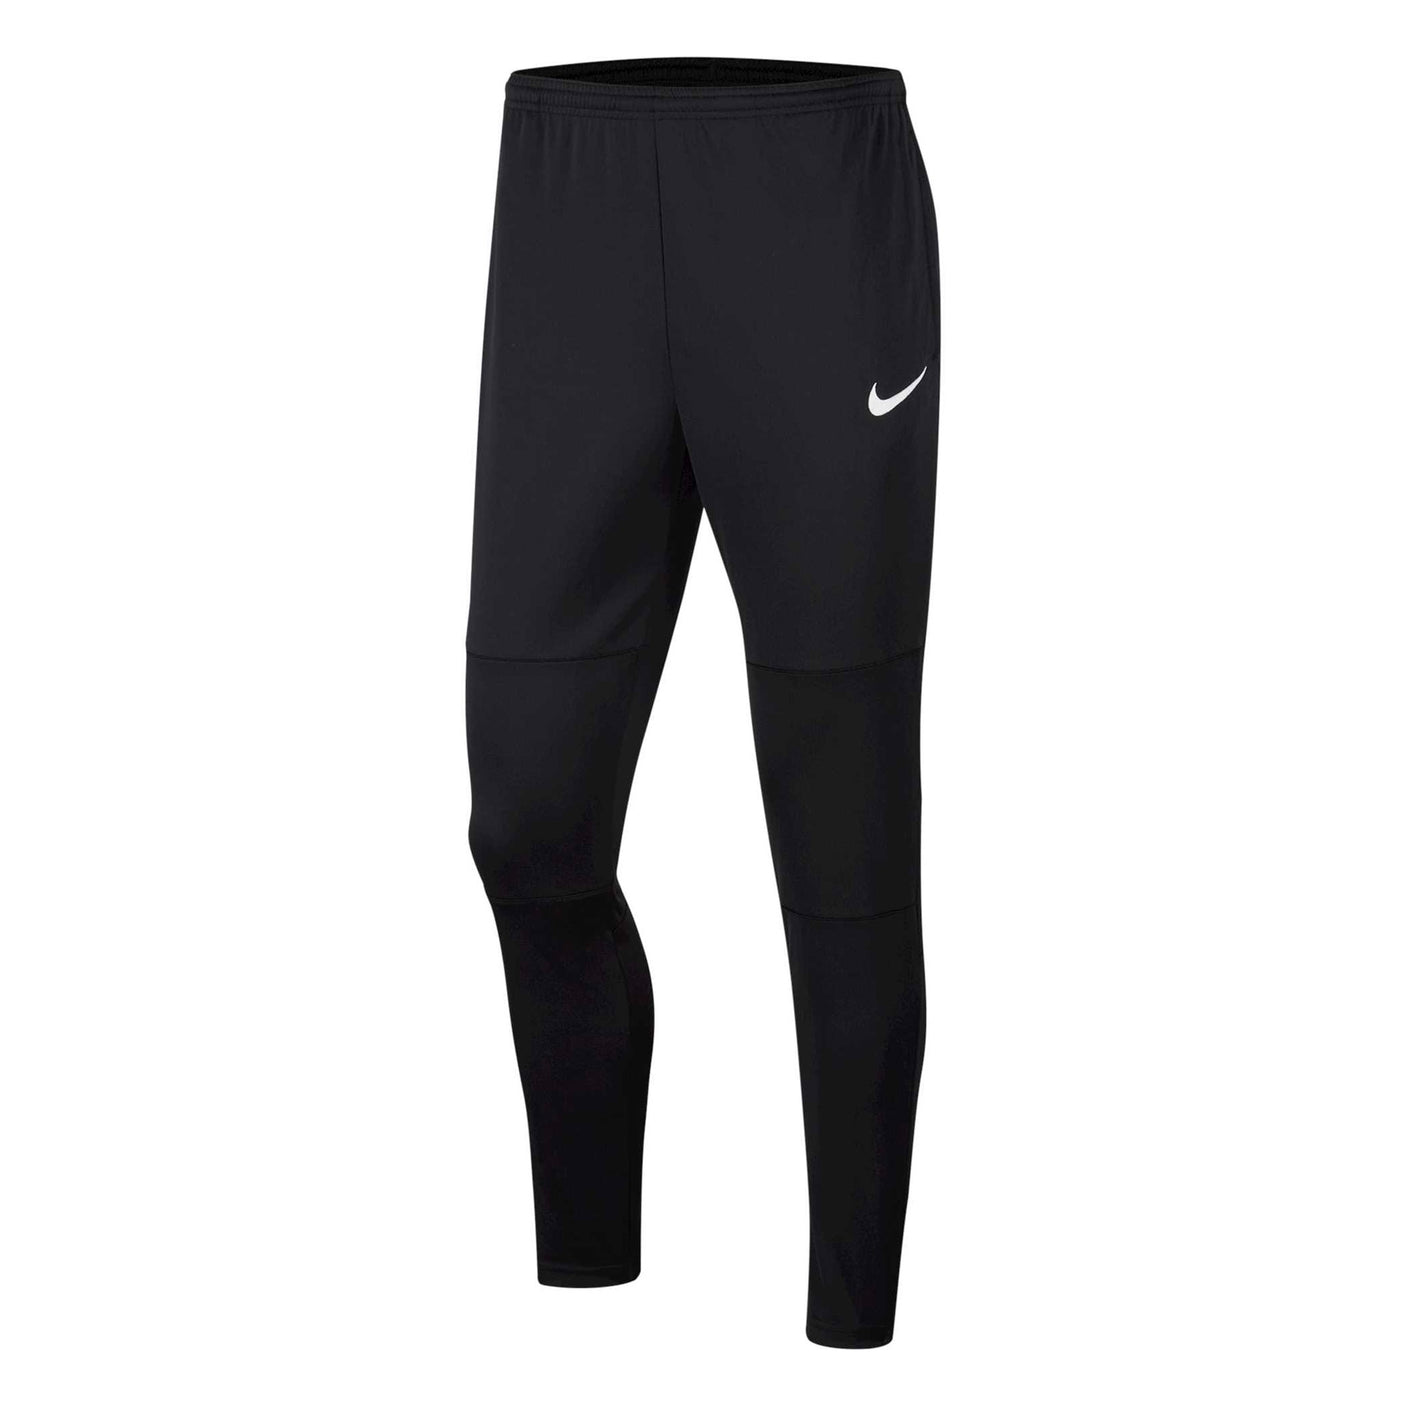 Nike Men's Dri-Fit Park 20 Training Pants Black/White Front